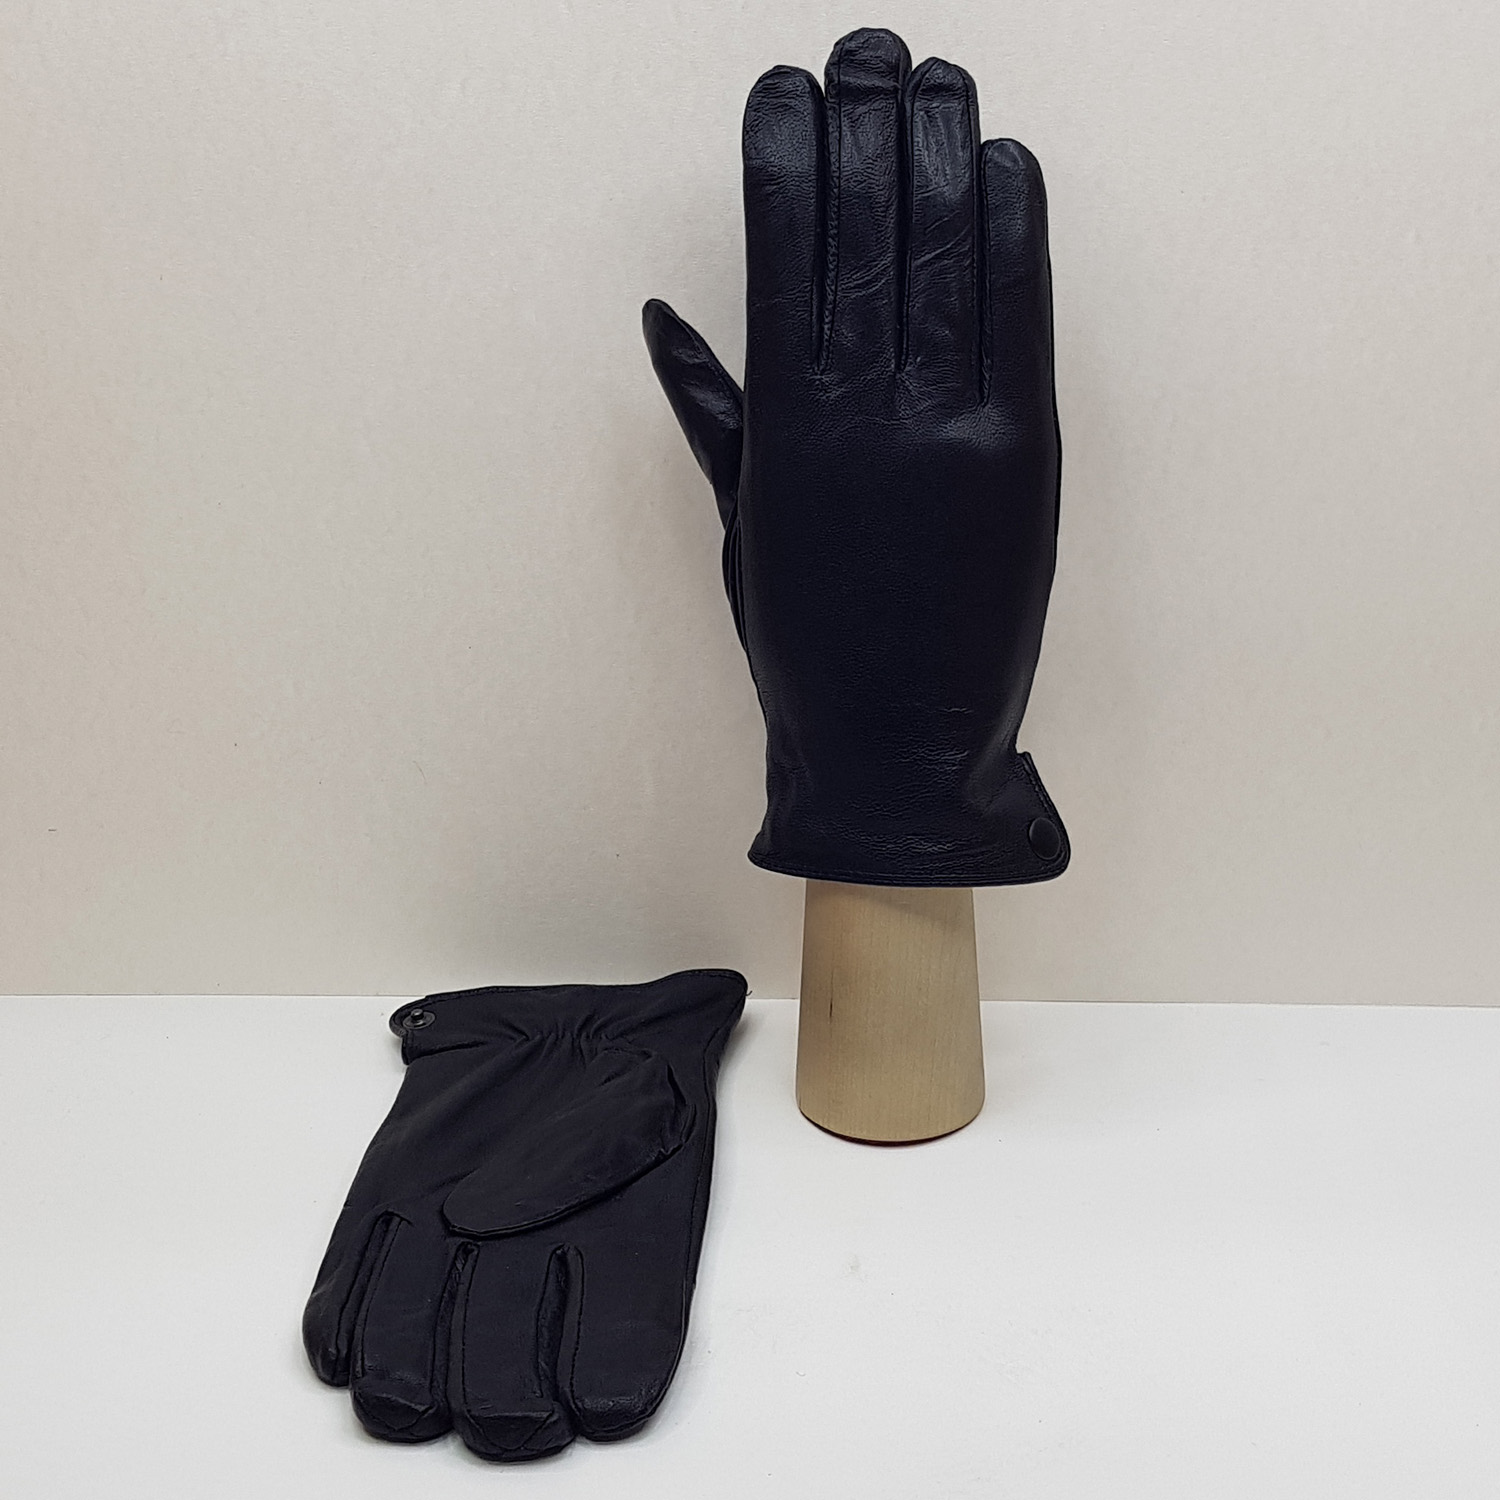 Мужские перчатки кожаные с шерстяной подкладкой подростковые №2 (Упаковка 5 шт.)